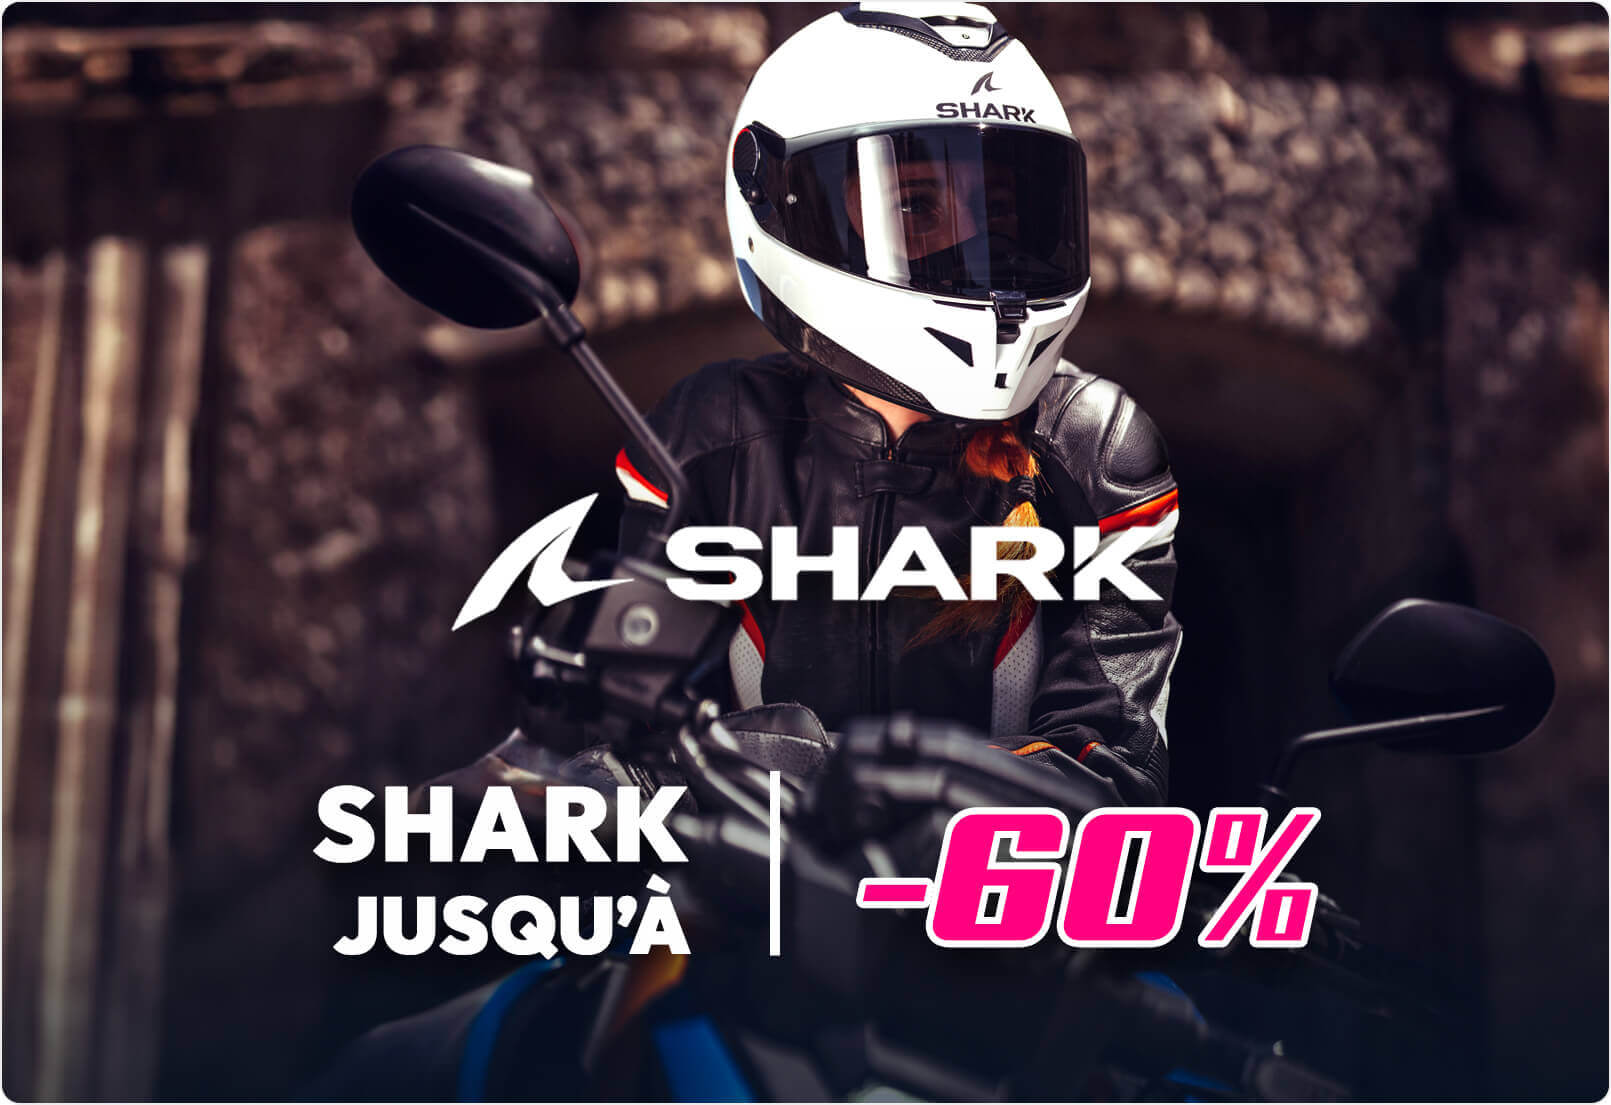 Casques Shark jusqu'à -60%